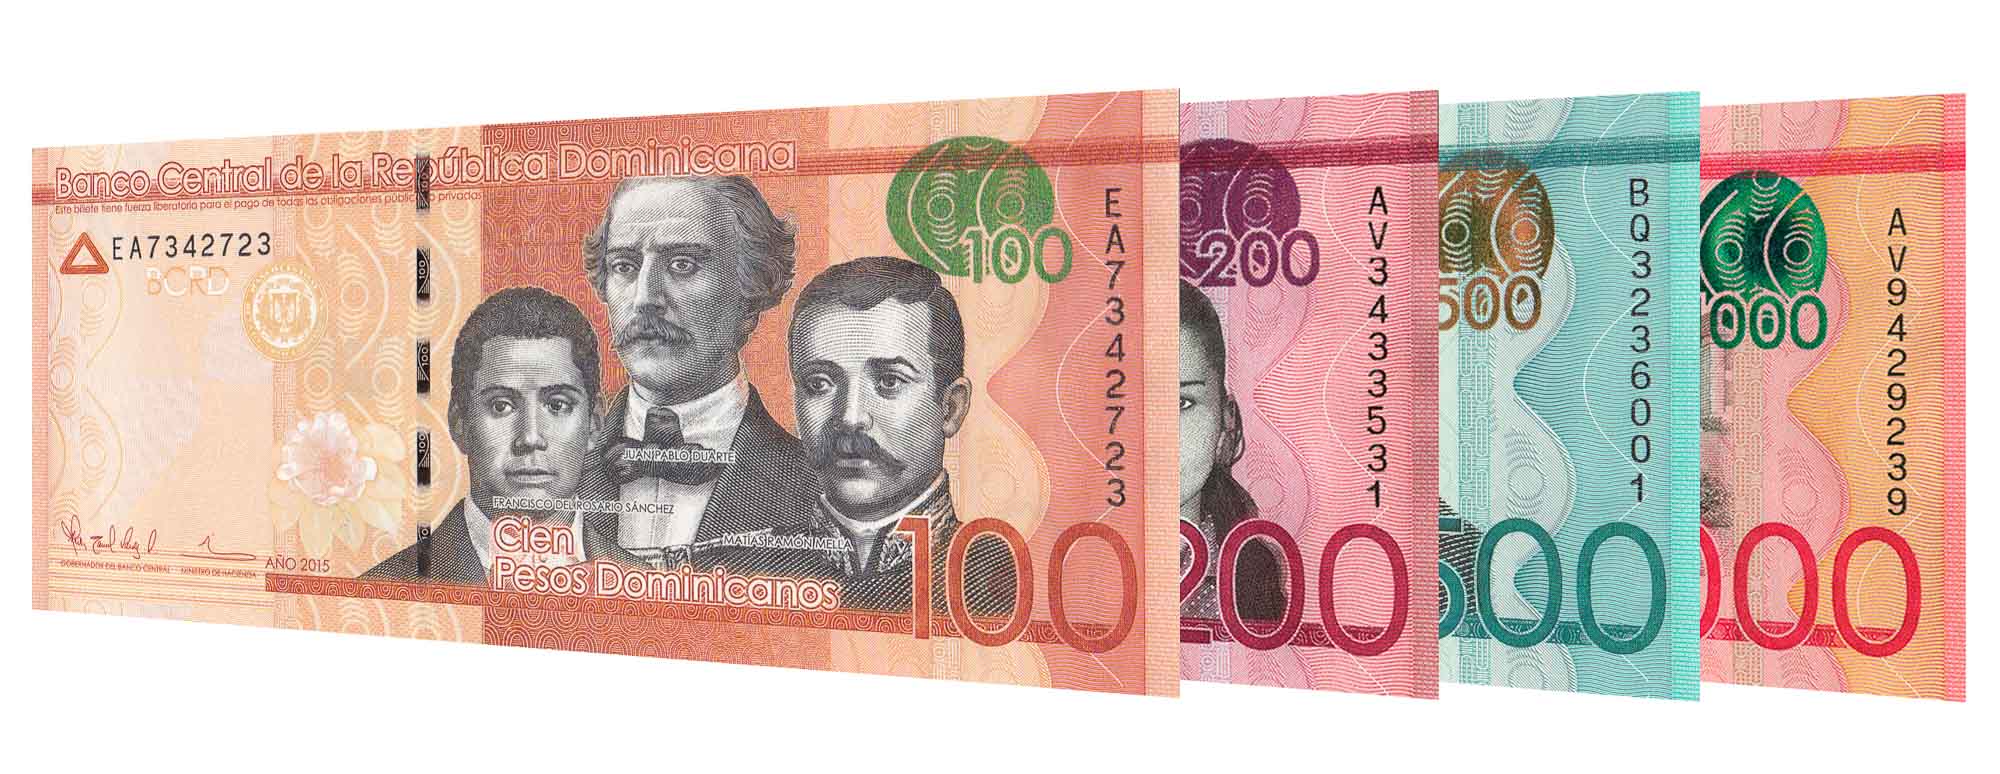 17000 pesos to dollars